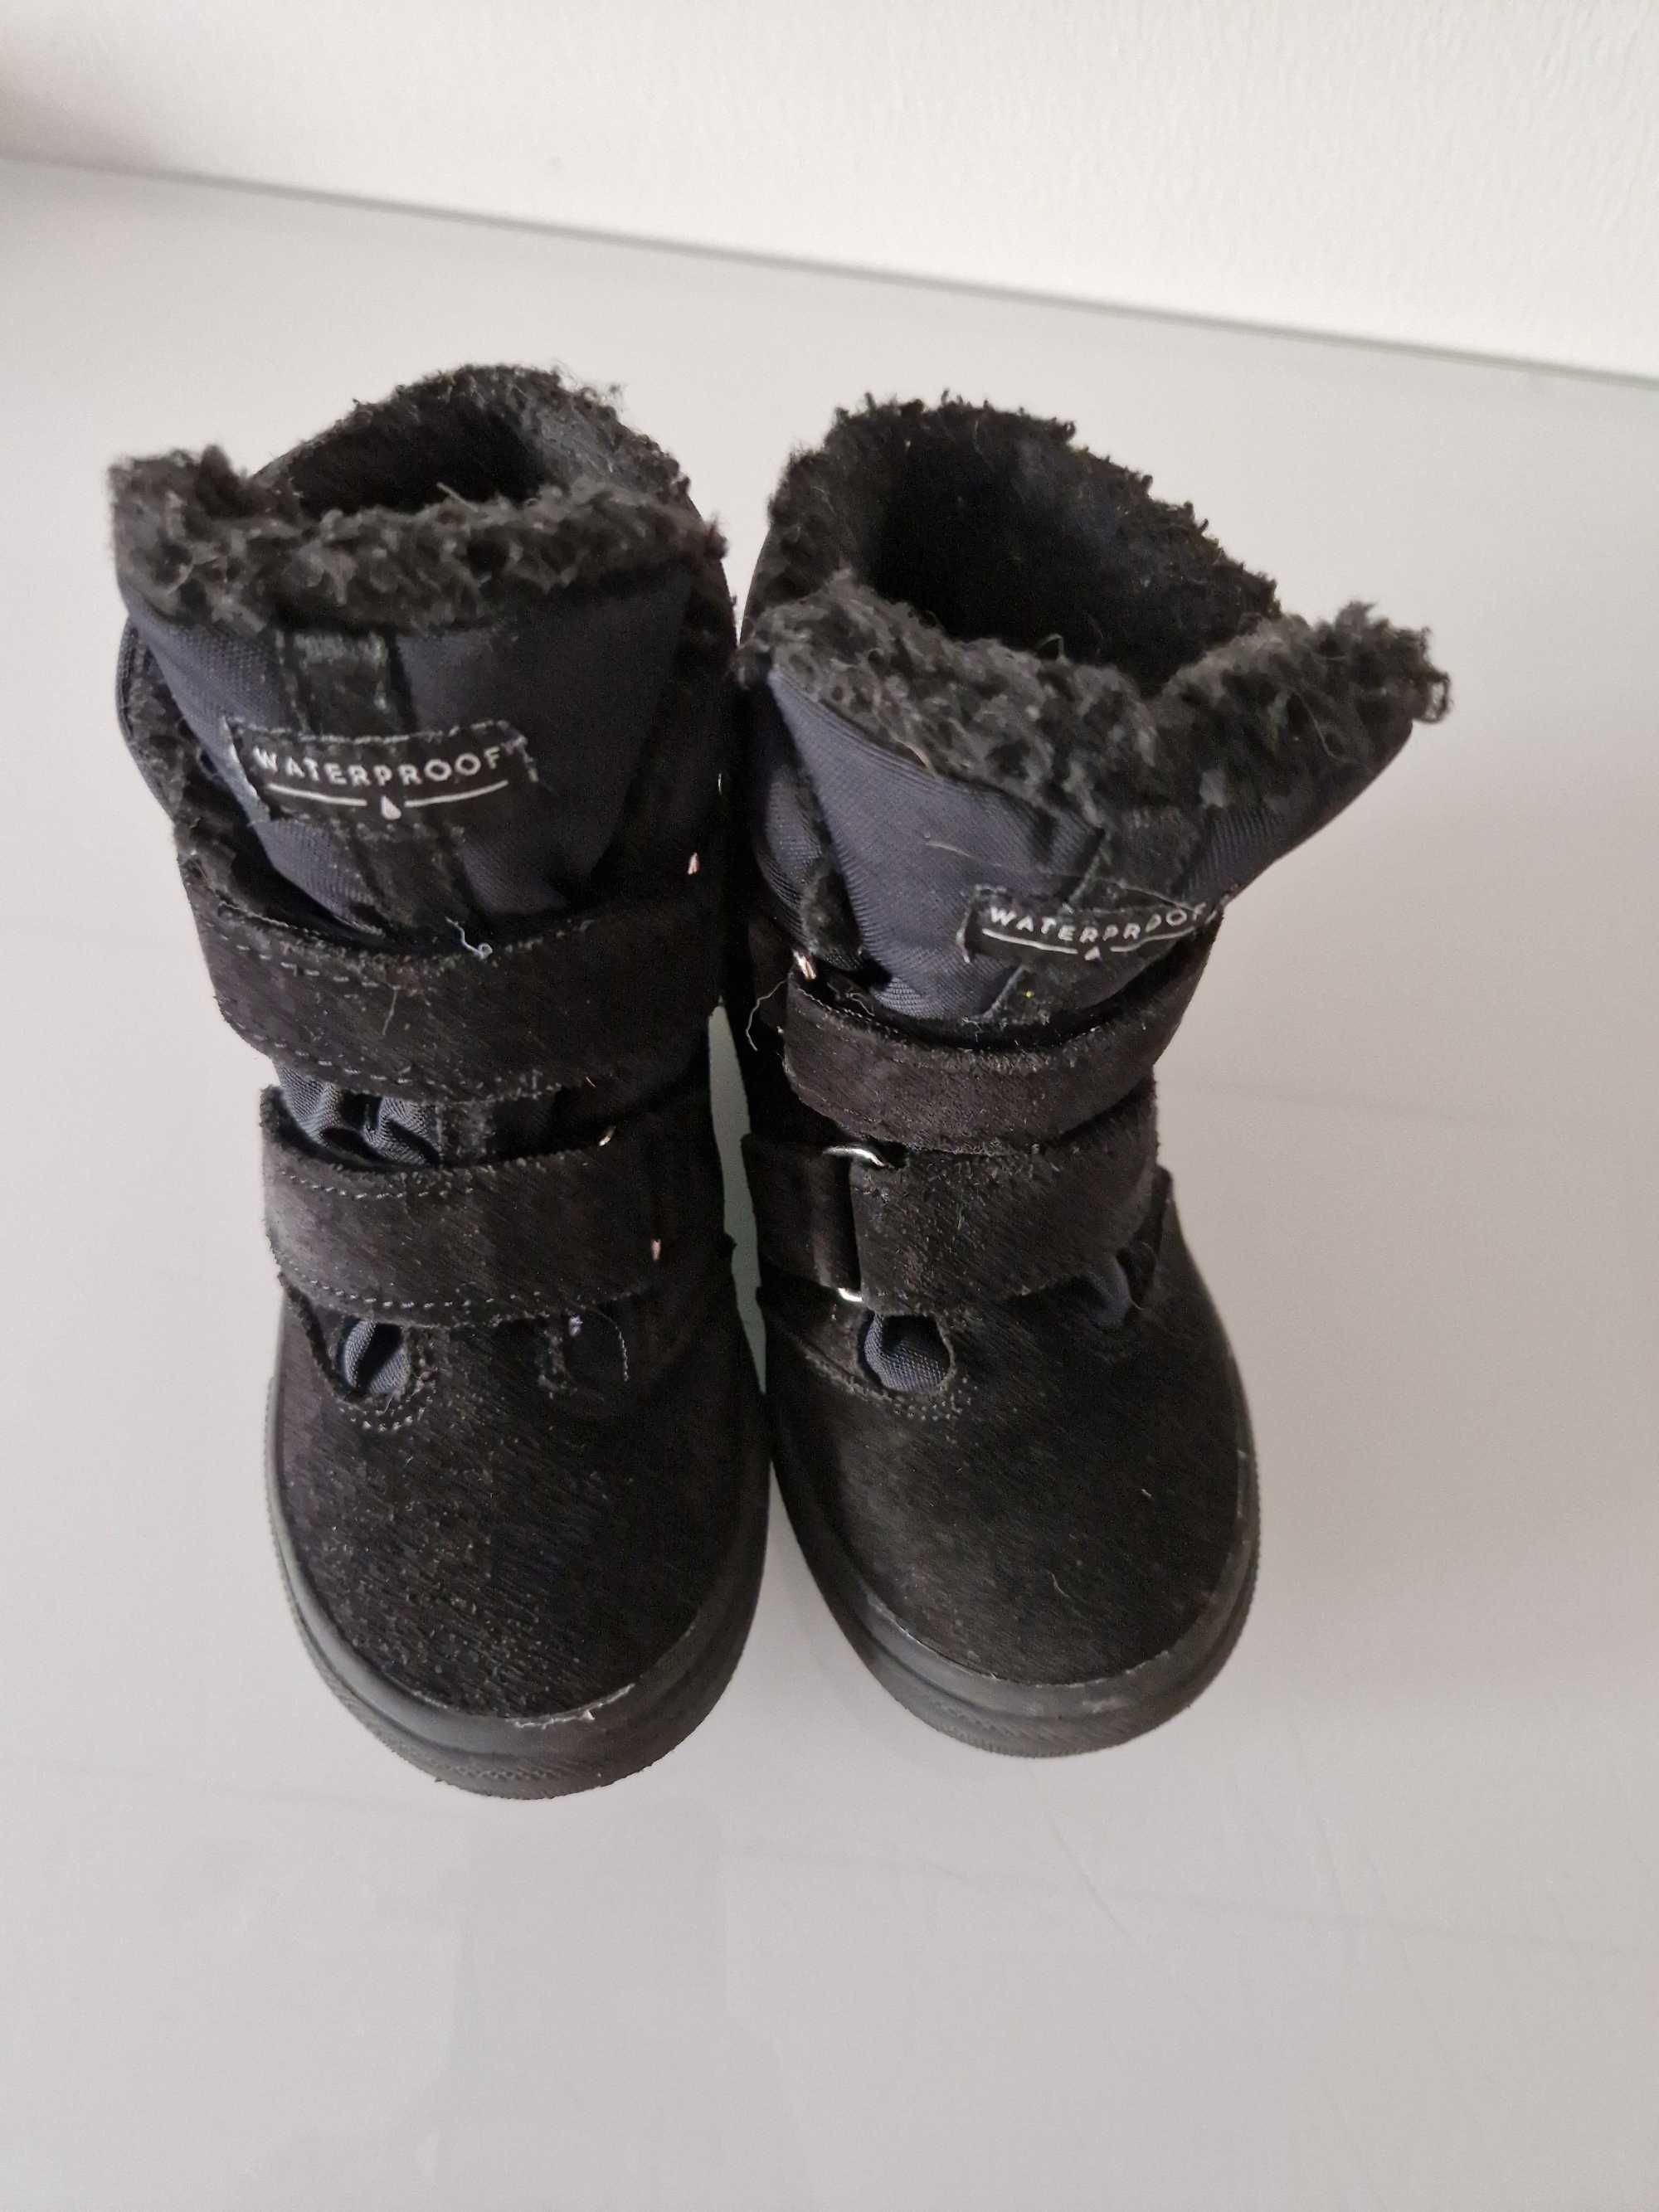 Buty zimowe Mrugała Iwo czarne rozmiar 27